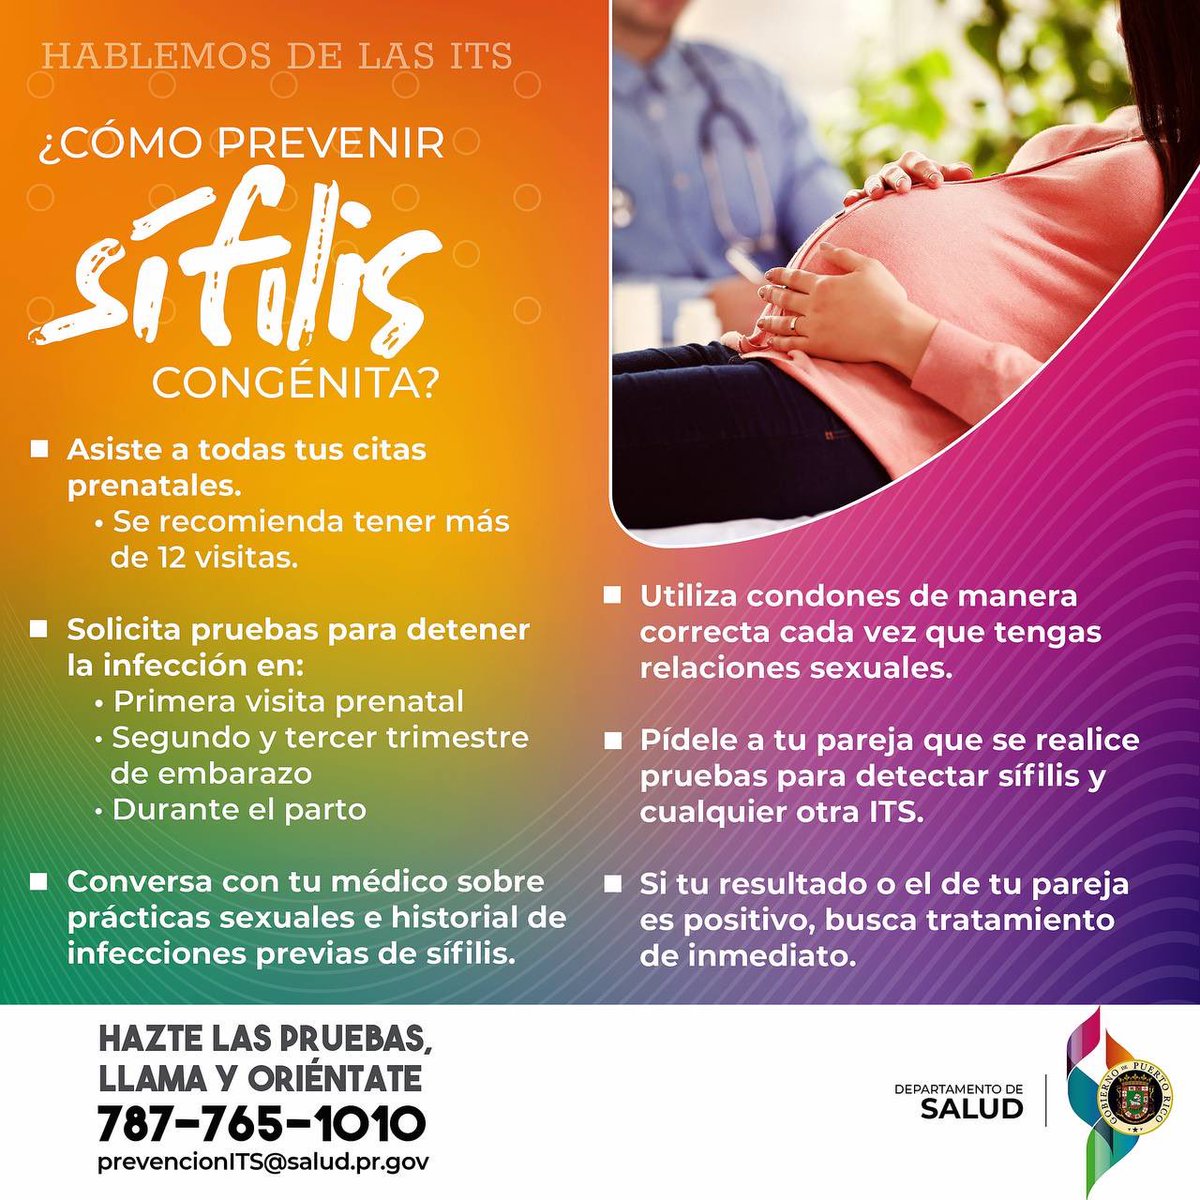 Durante el embarazo, la sífilis puede ser transmitida al bebé a través de la placenta. Habla con tu médico sobre los factores de riesgo de adquirir sífilis u otra infección por transmisión sexual, tratamiento y cómo prevenirla. ☎️787-765-1010 #HablemosDeLasITS